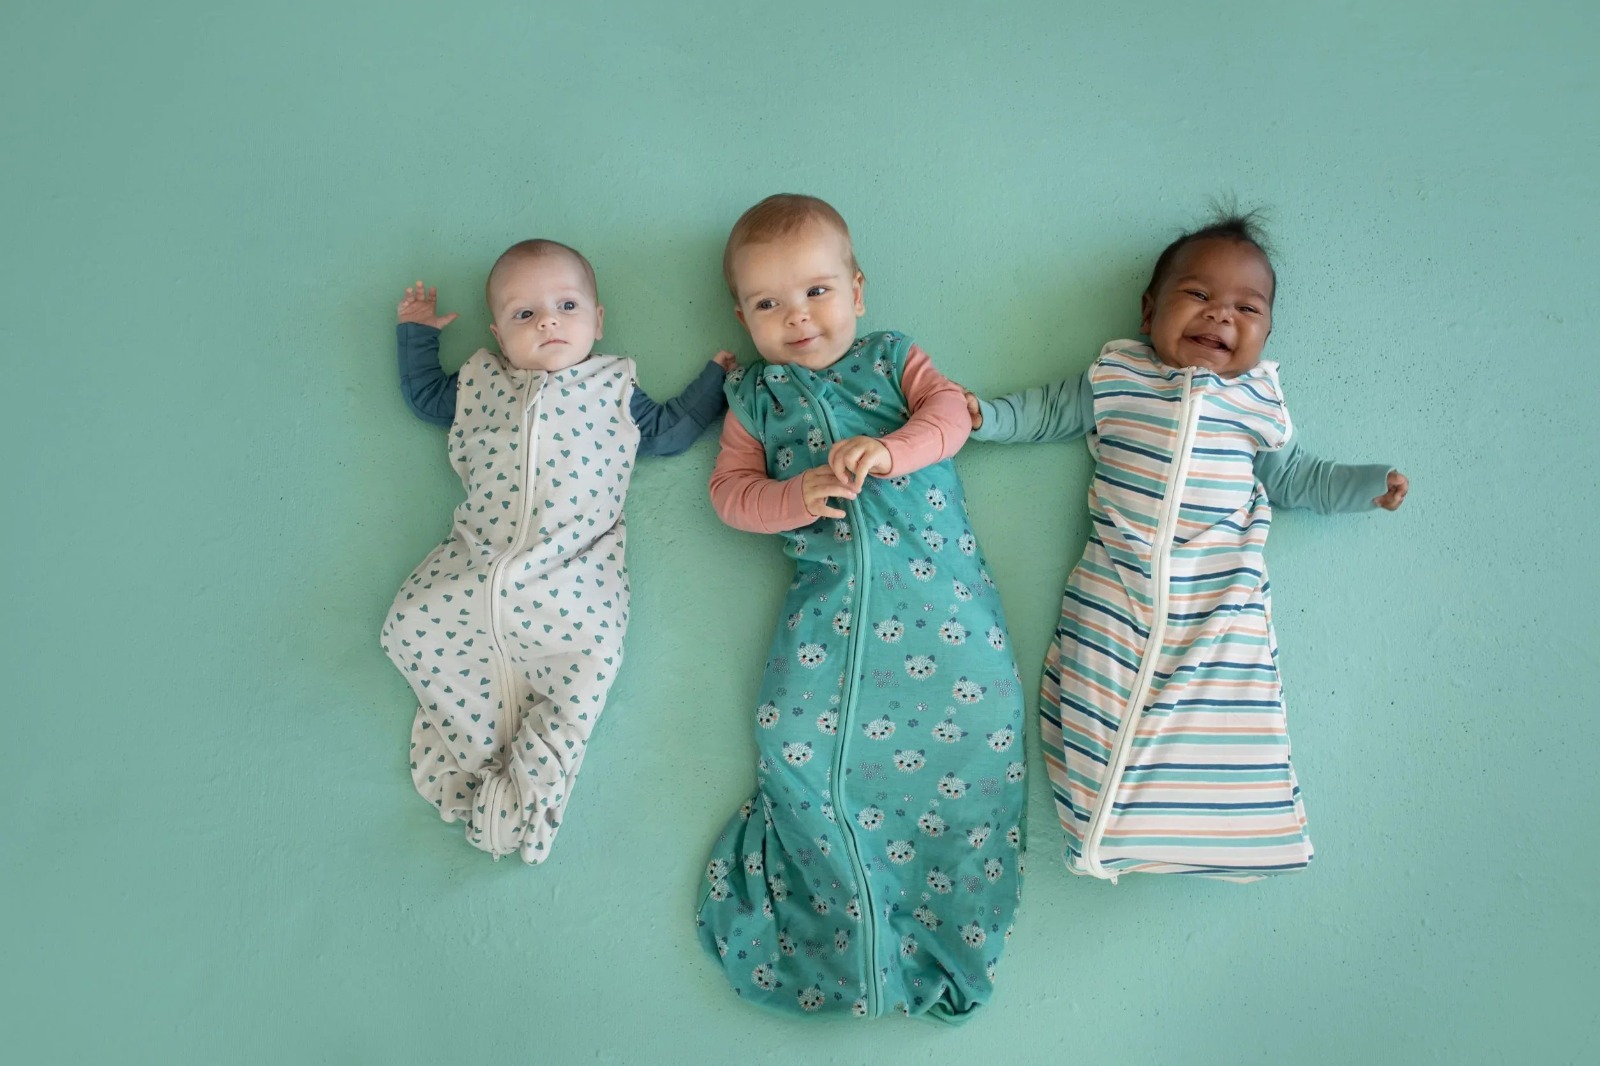 Bebek Uyku Tulumları: Konforlu ve Güvenli Uyku İçin En Doğrusu